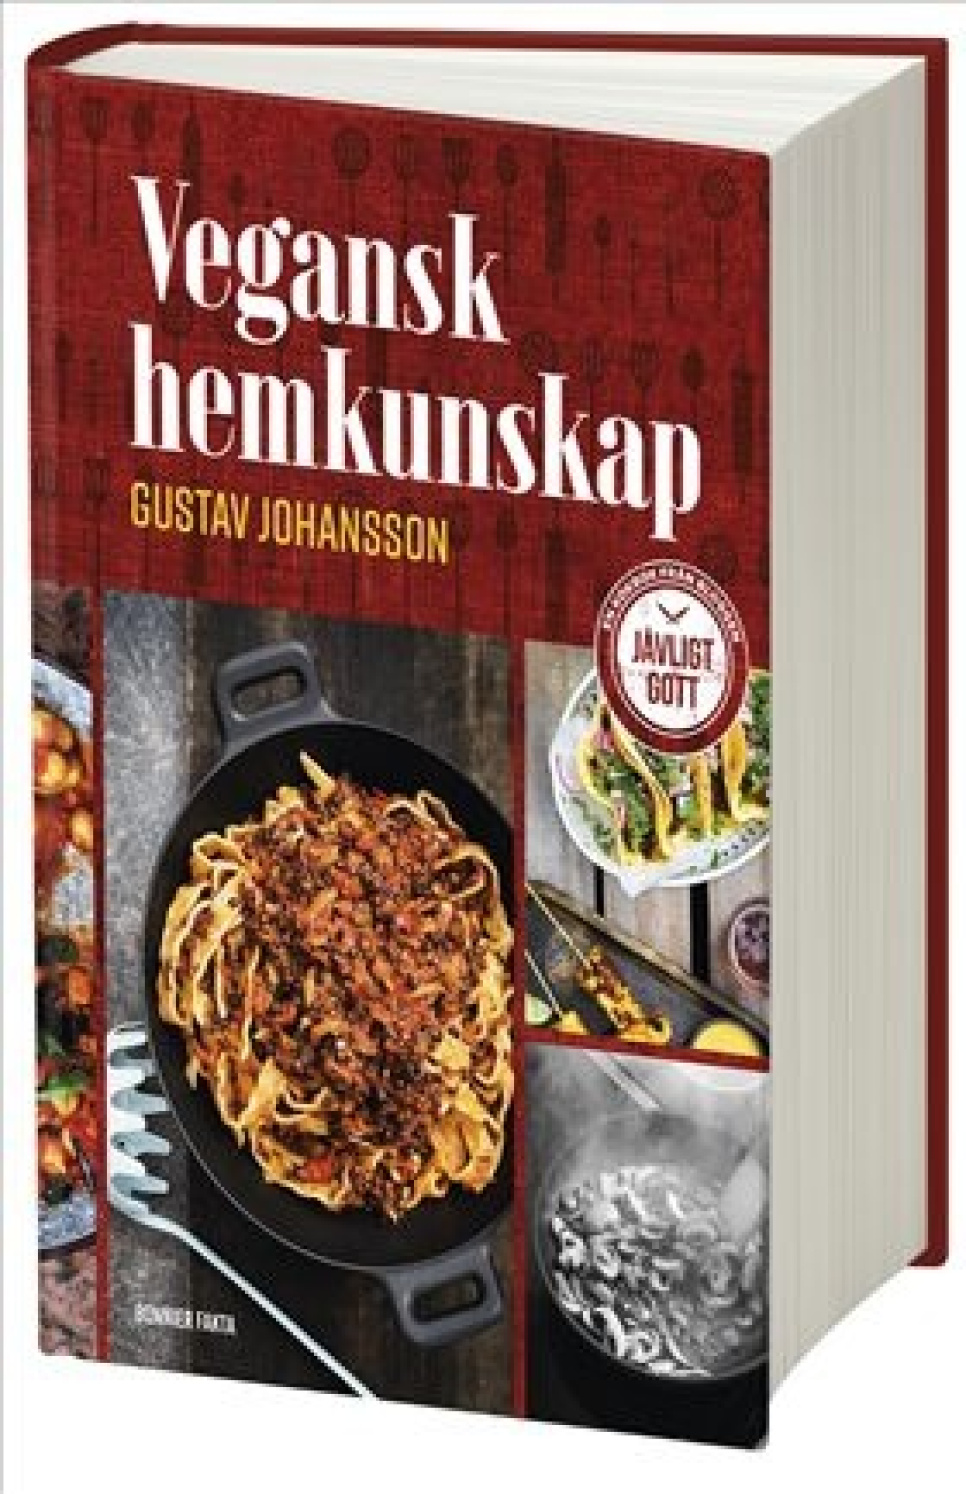 Vegansk hemkunskap av Gustav Johansson i gruppen Matlagning / Kokböcker / Vegetariskt hos KitchenLab (1355-26327)